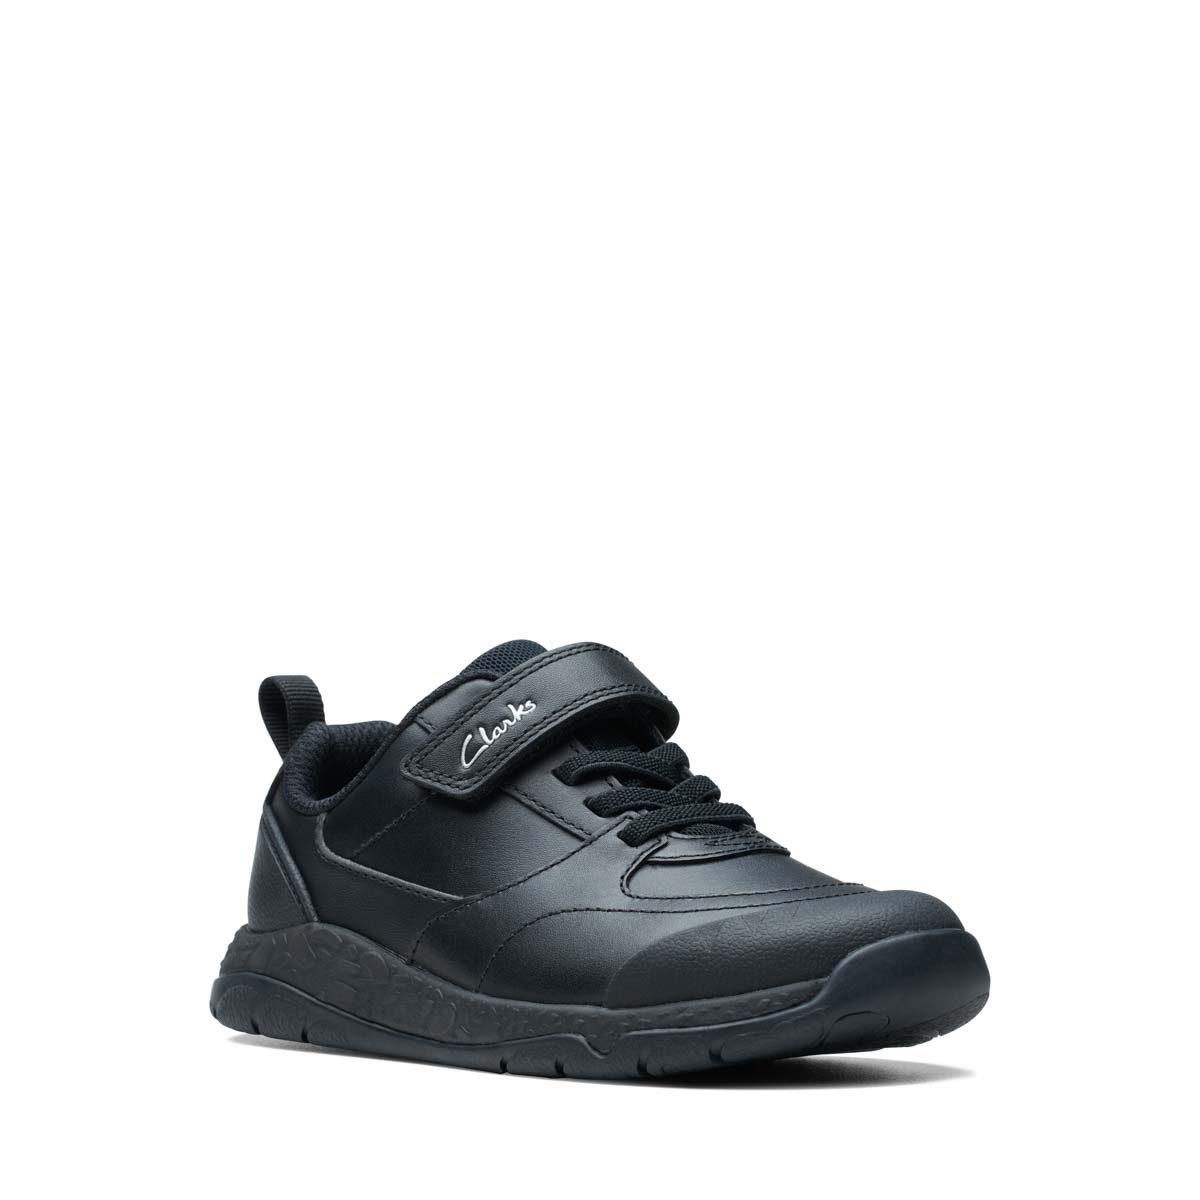 Clarks Steggy Stride K Black Leather Kids Boys Shoes, 50% OFF